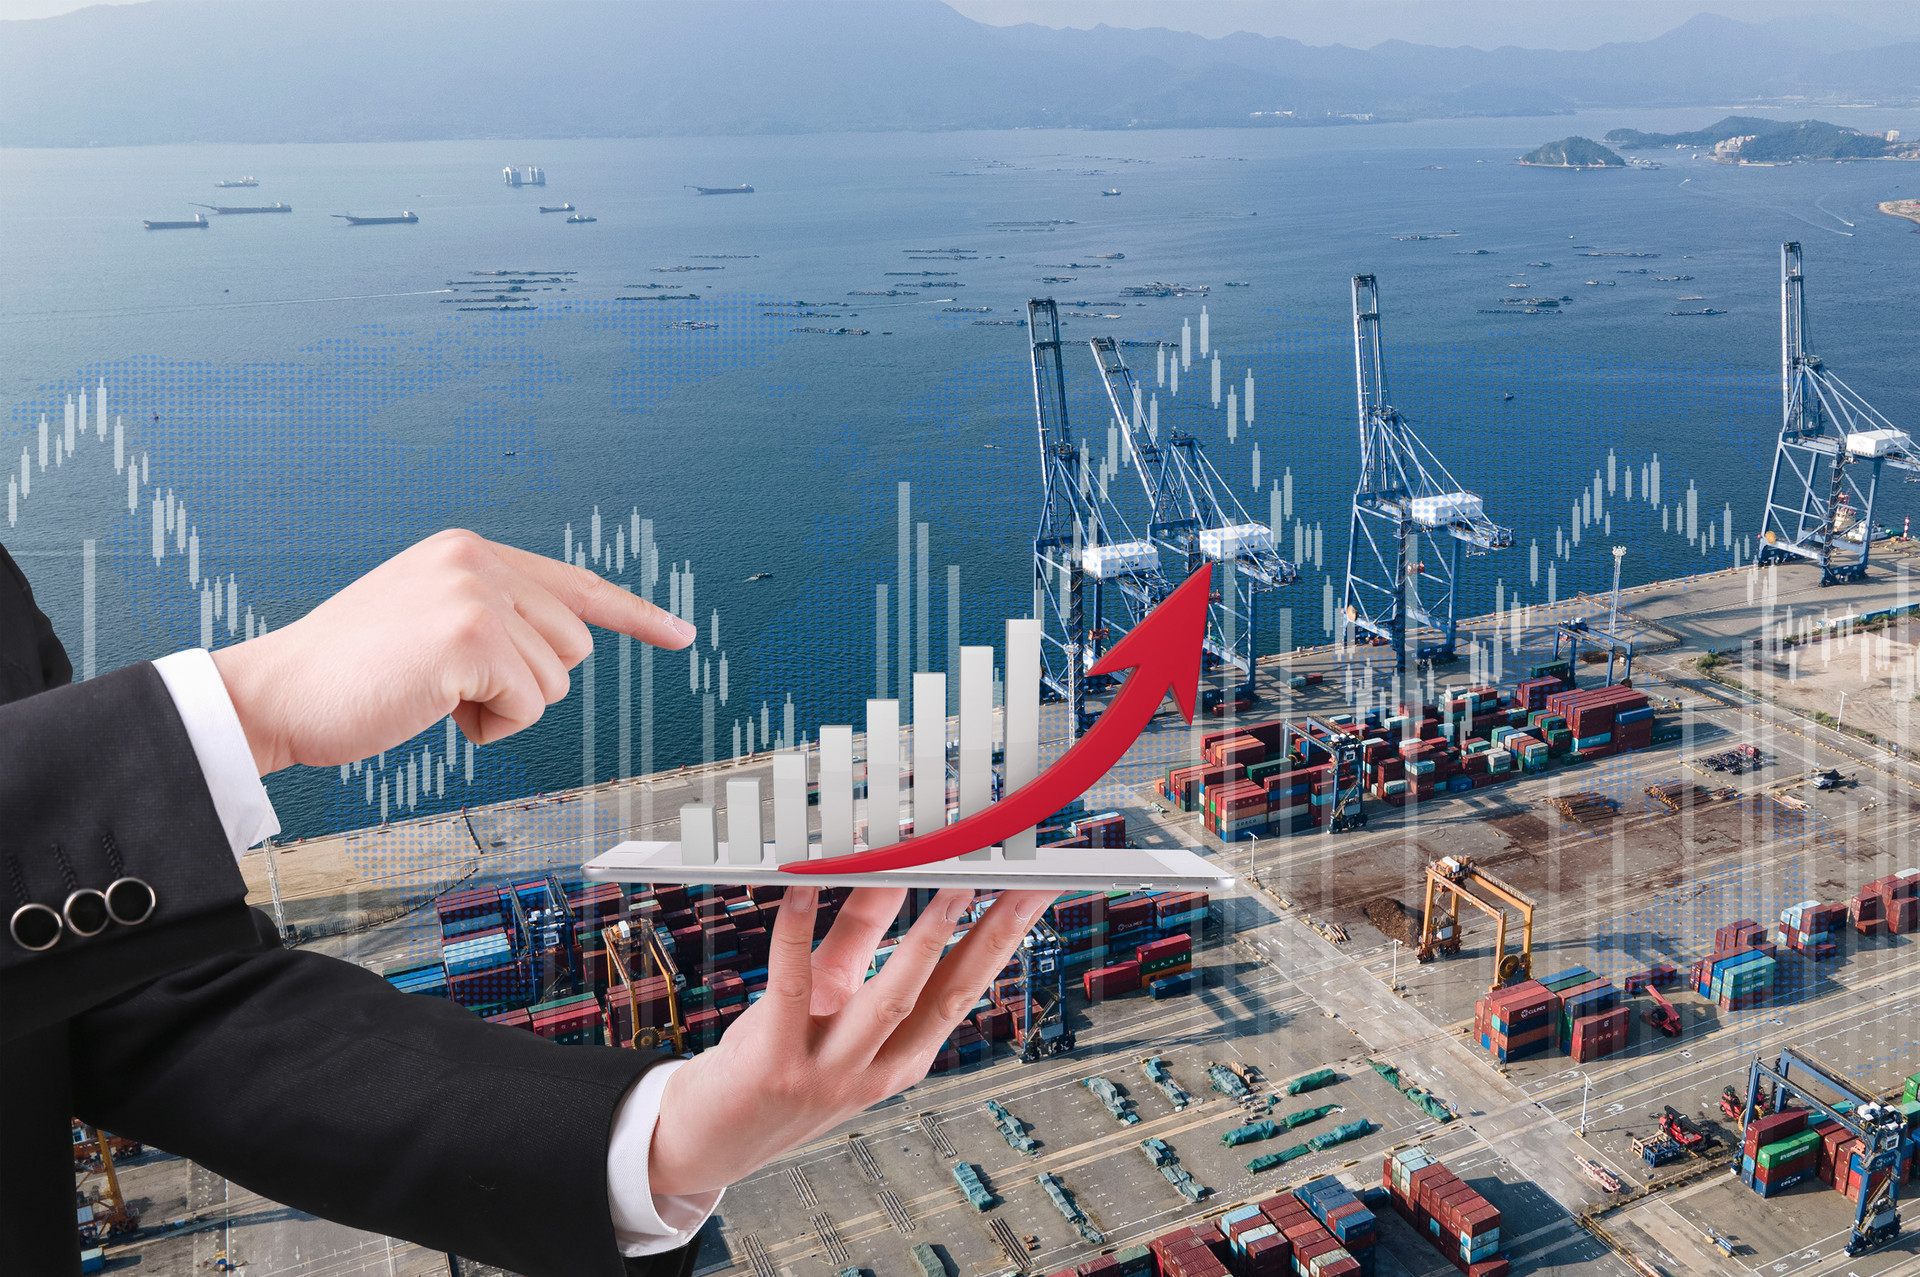 前4个月青岛市外贸进出口2803.4亿元 同比增长3.2%